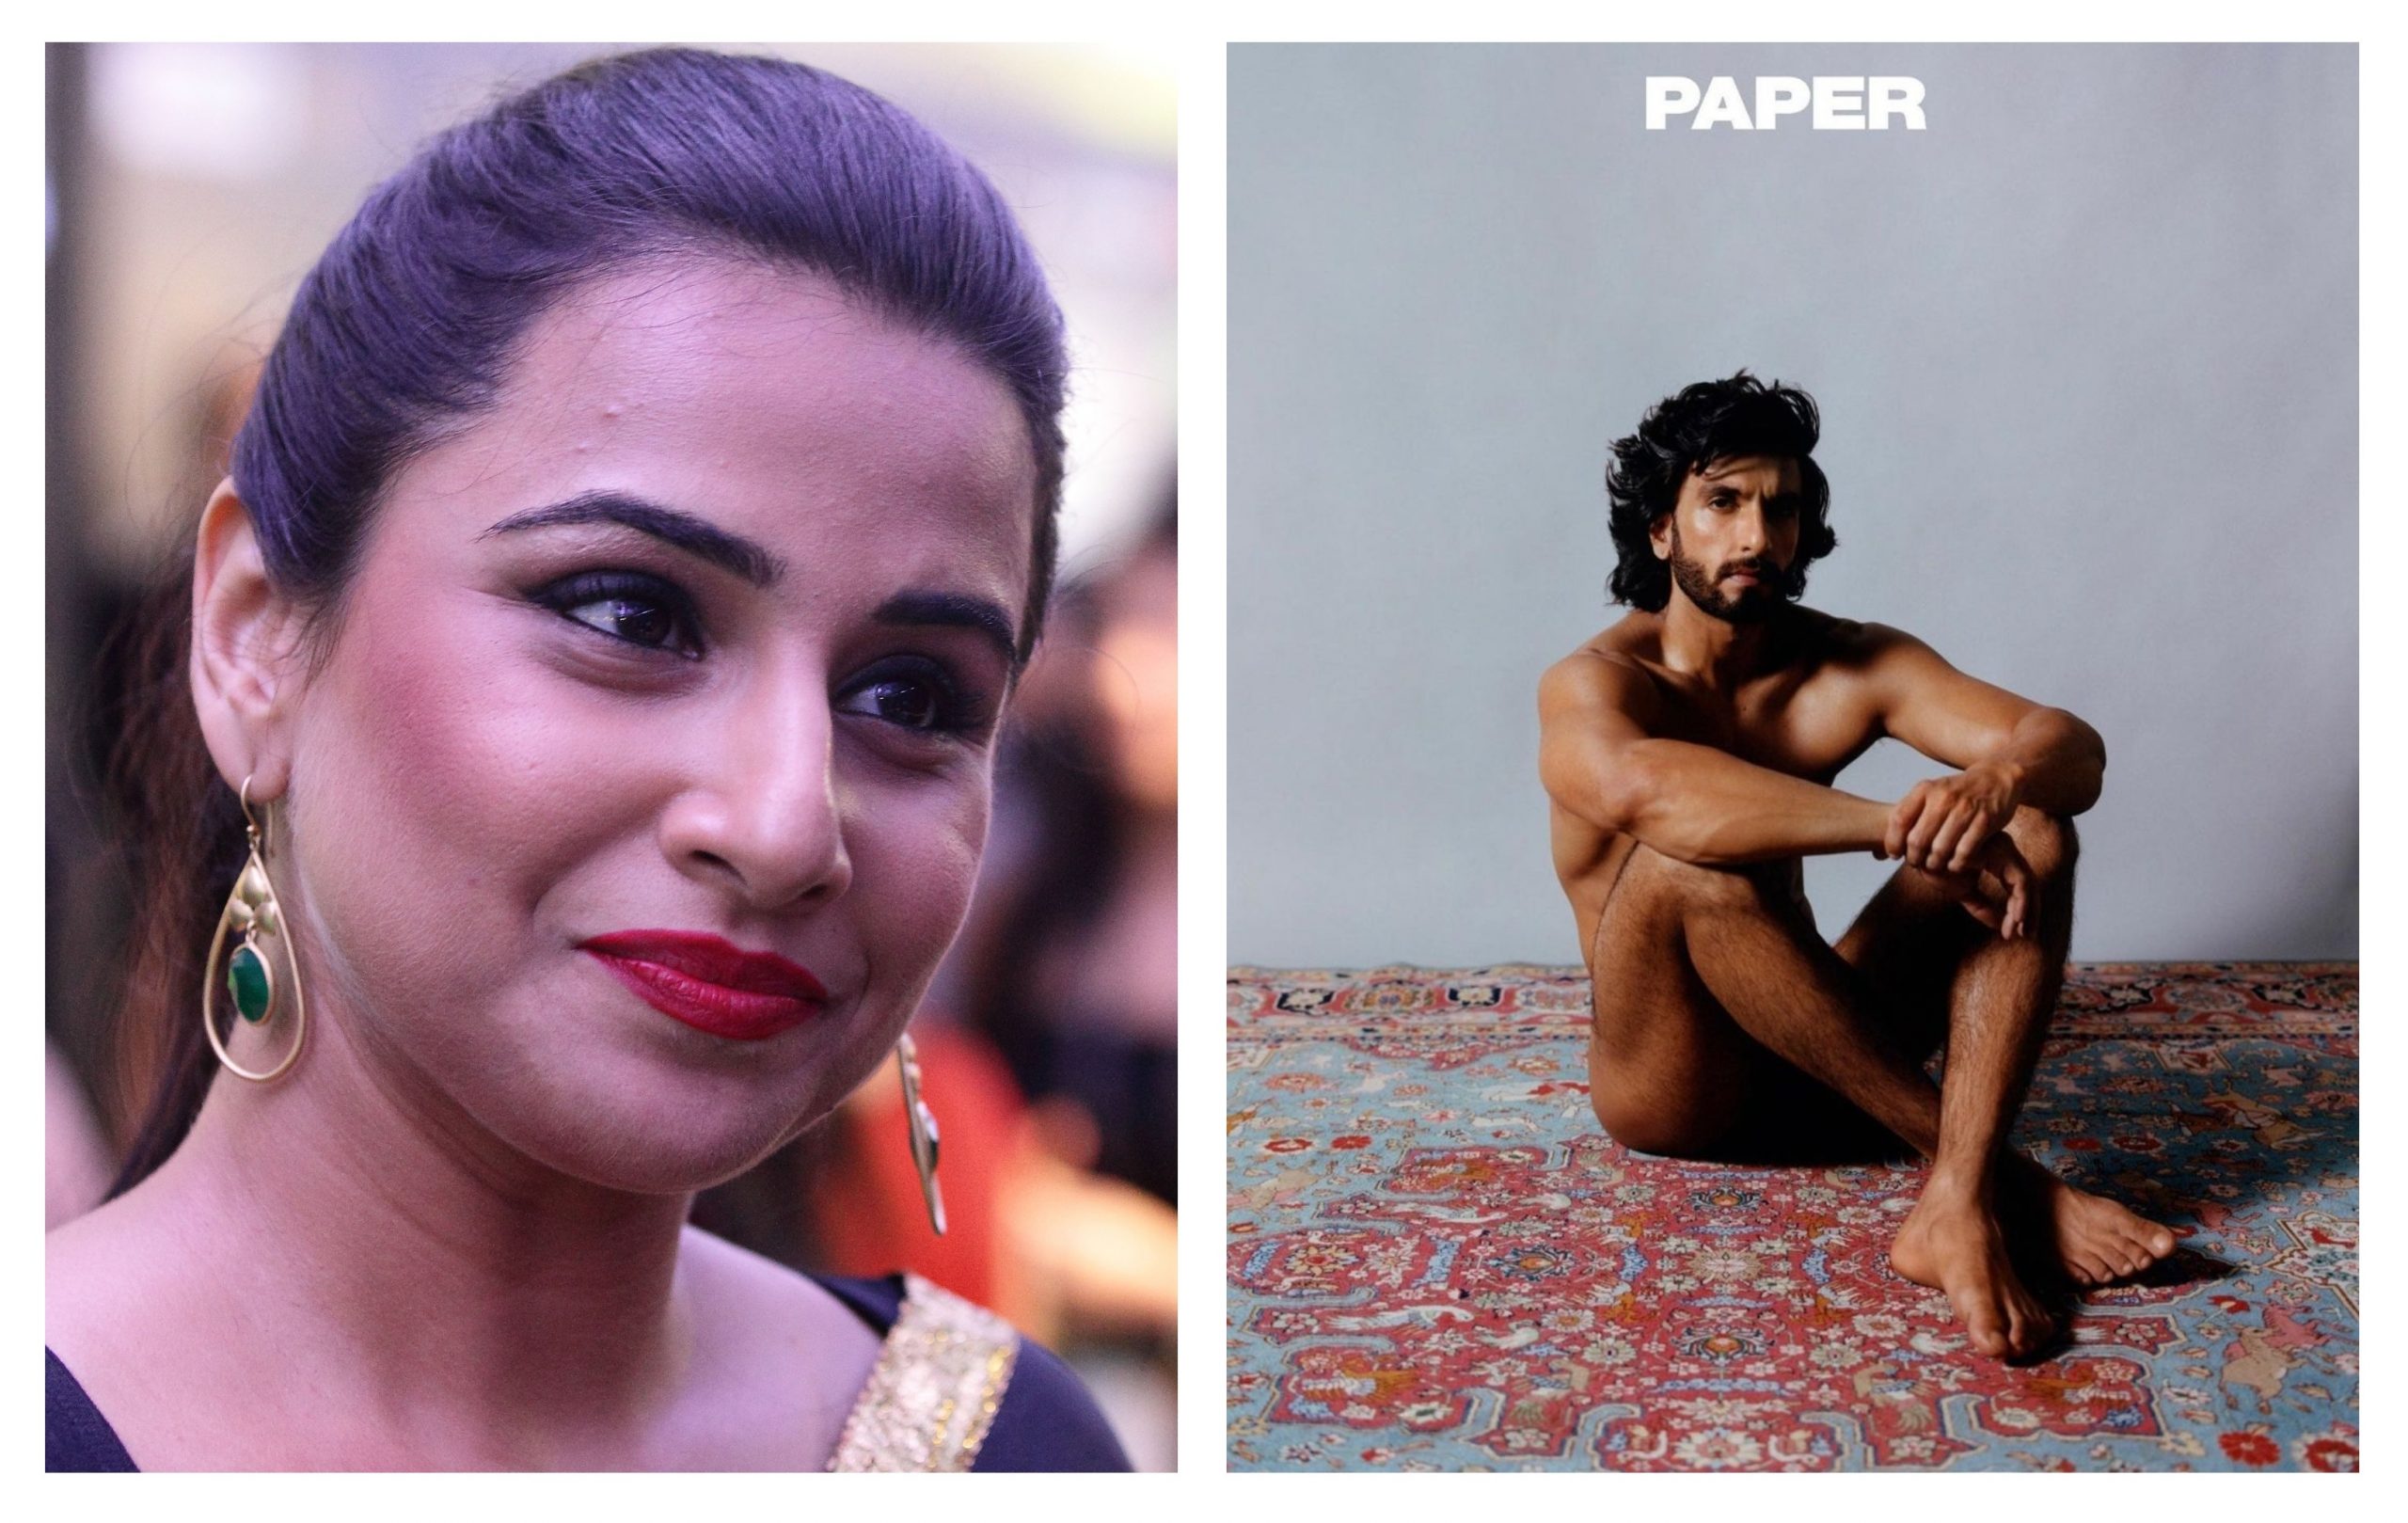 Let us also feast our eyes': Vidya Balan on Ranveer Singh's nude photoshoot  - EasternEye